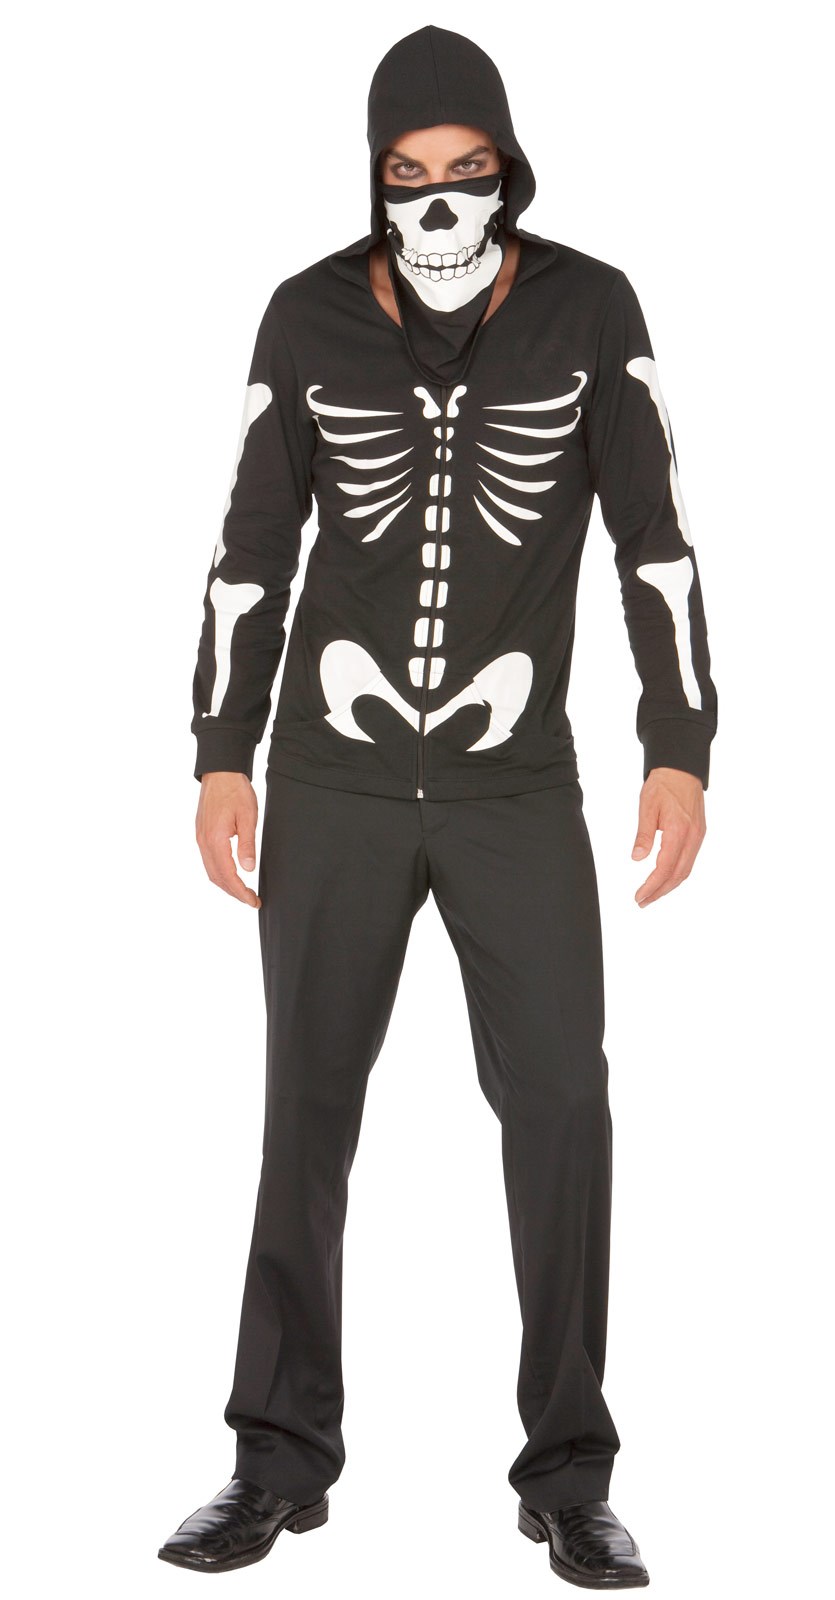 Dustin Bones Adult Costume